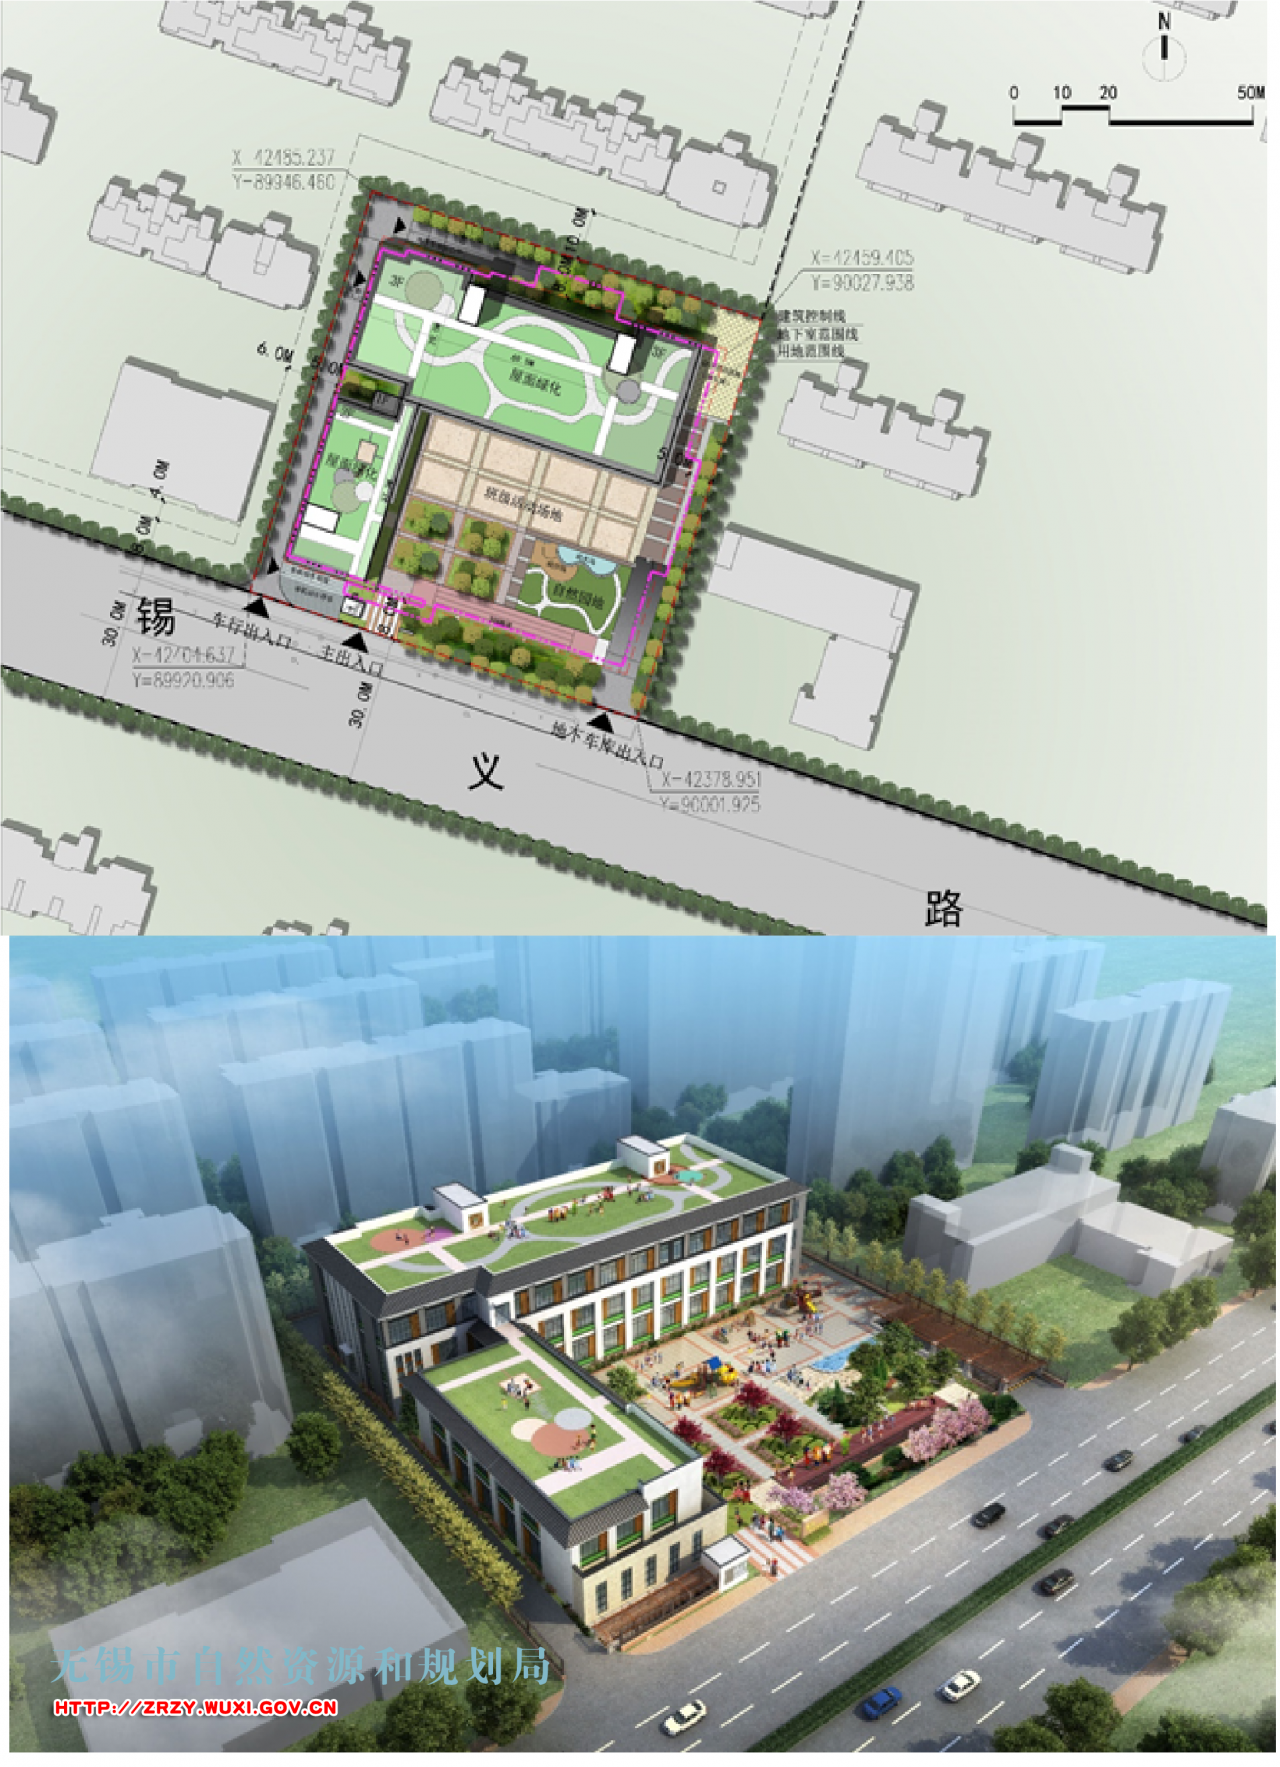 梅村中心幼儿园崇德分园工程项目规划设计方案批前公示